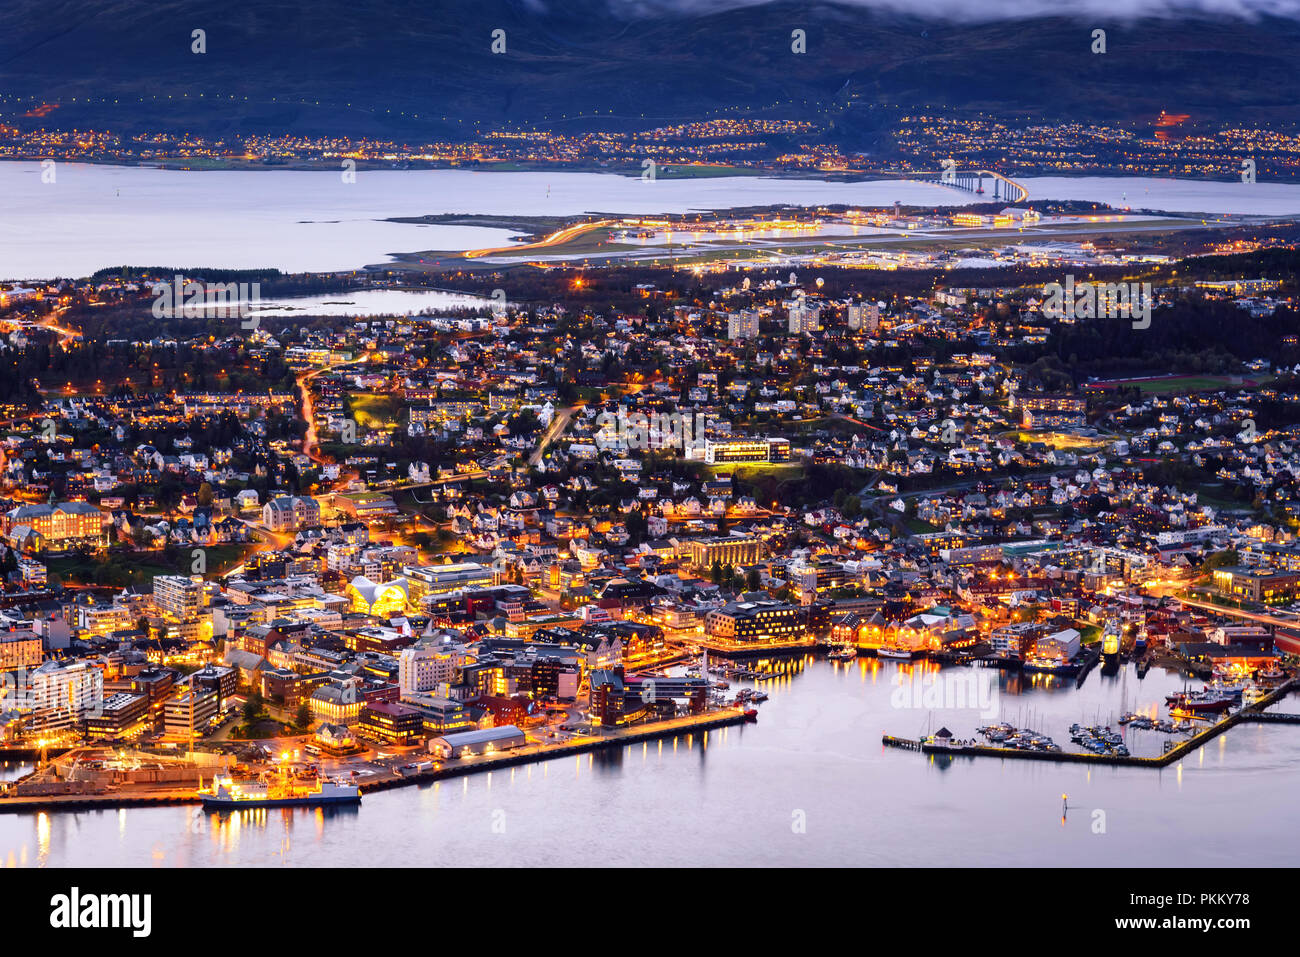 Vue aérienne de la ville de Tromso, Norvège, au crépuscule Banque D'Images